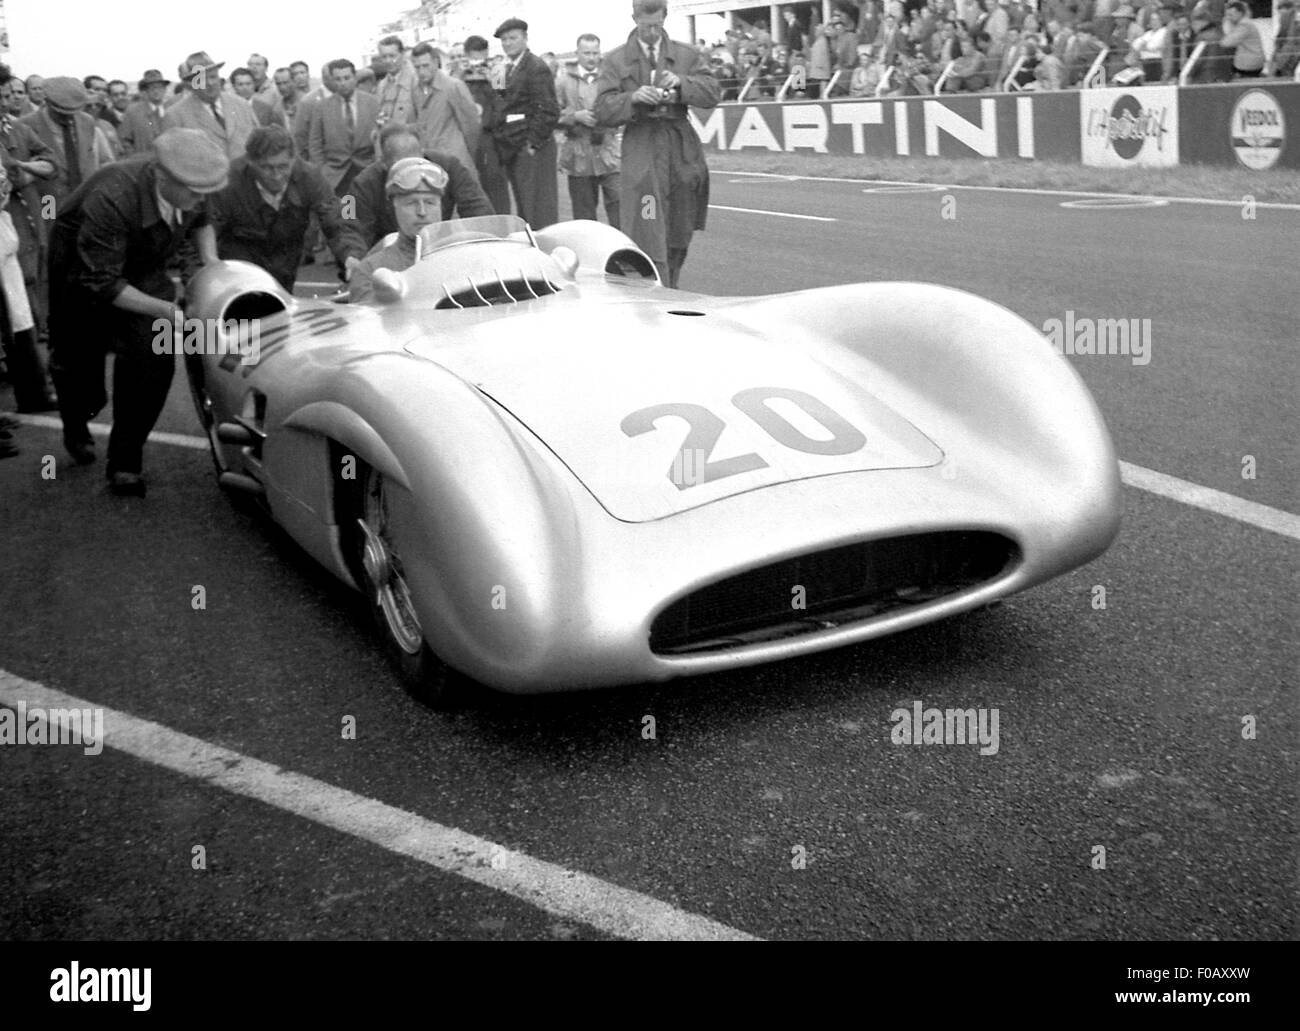 French GP in Reims 1954, KLING MERCEDES STROMLINIENWAGEN PUSH START Stock Photo